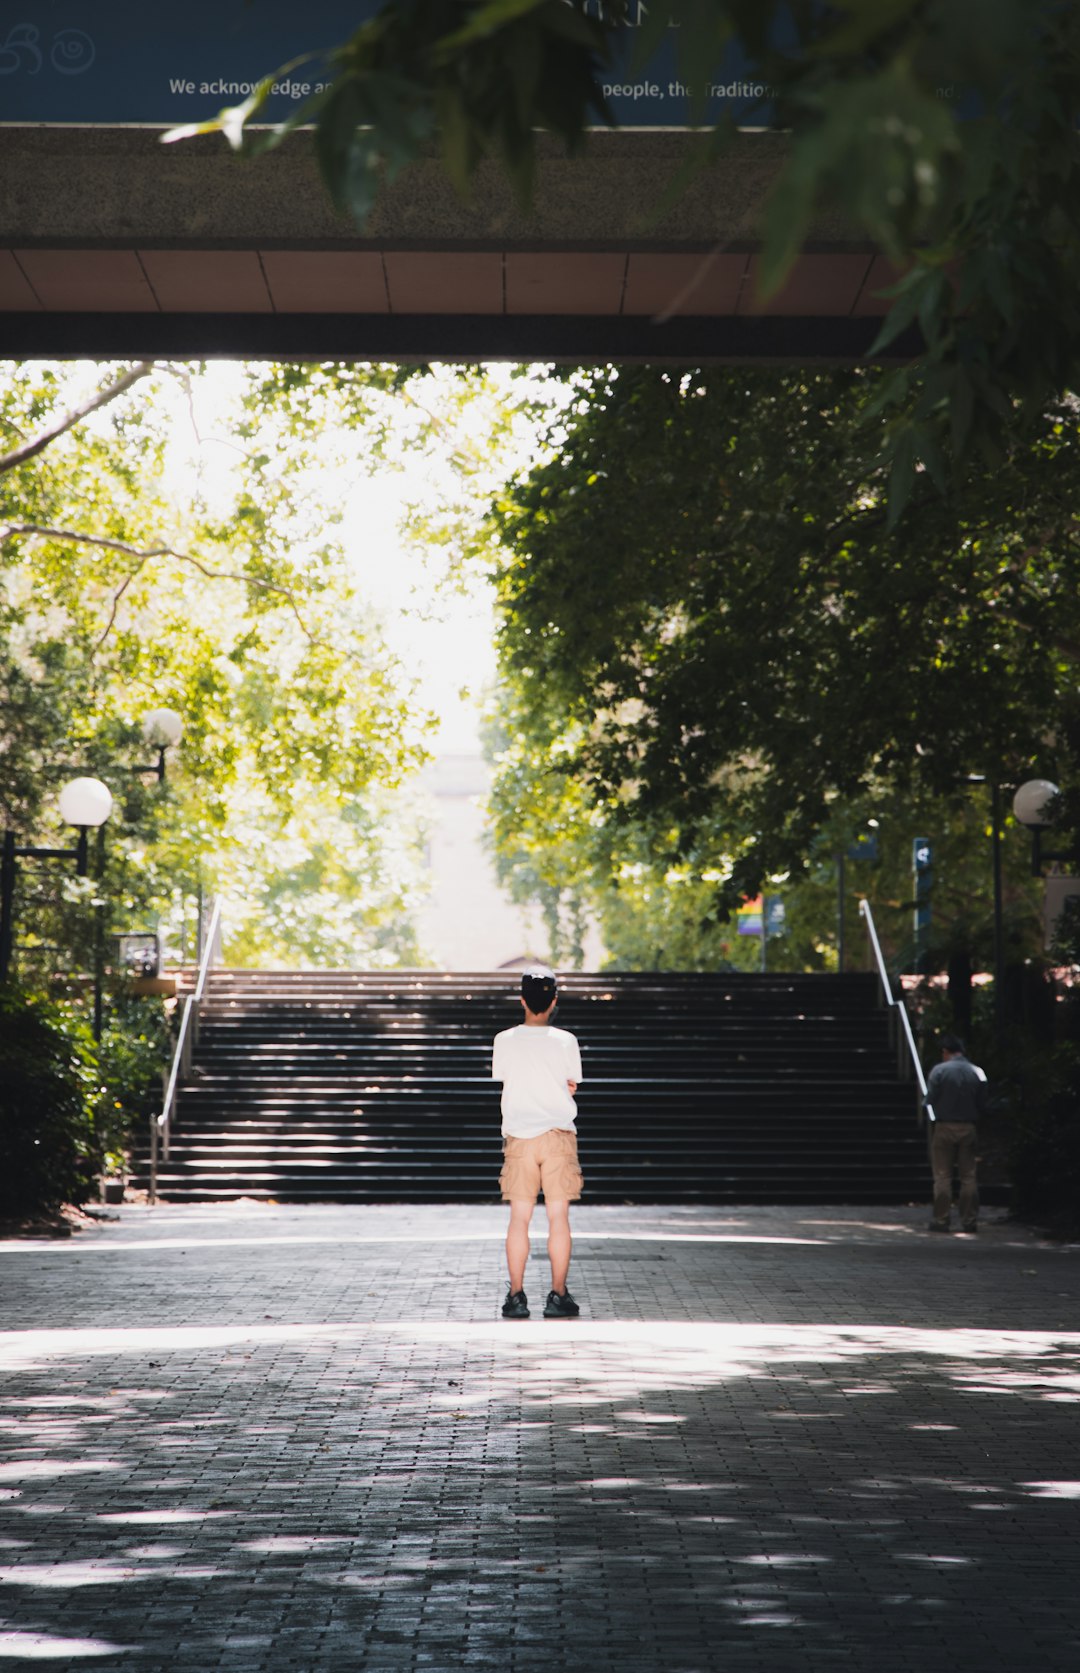 man in white t-shirt and brown shorts walking on sidewalk during daytime